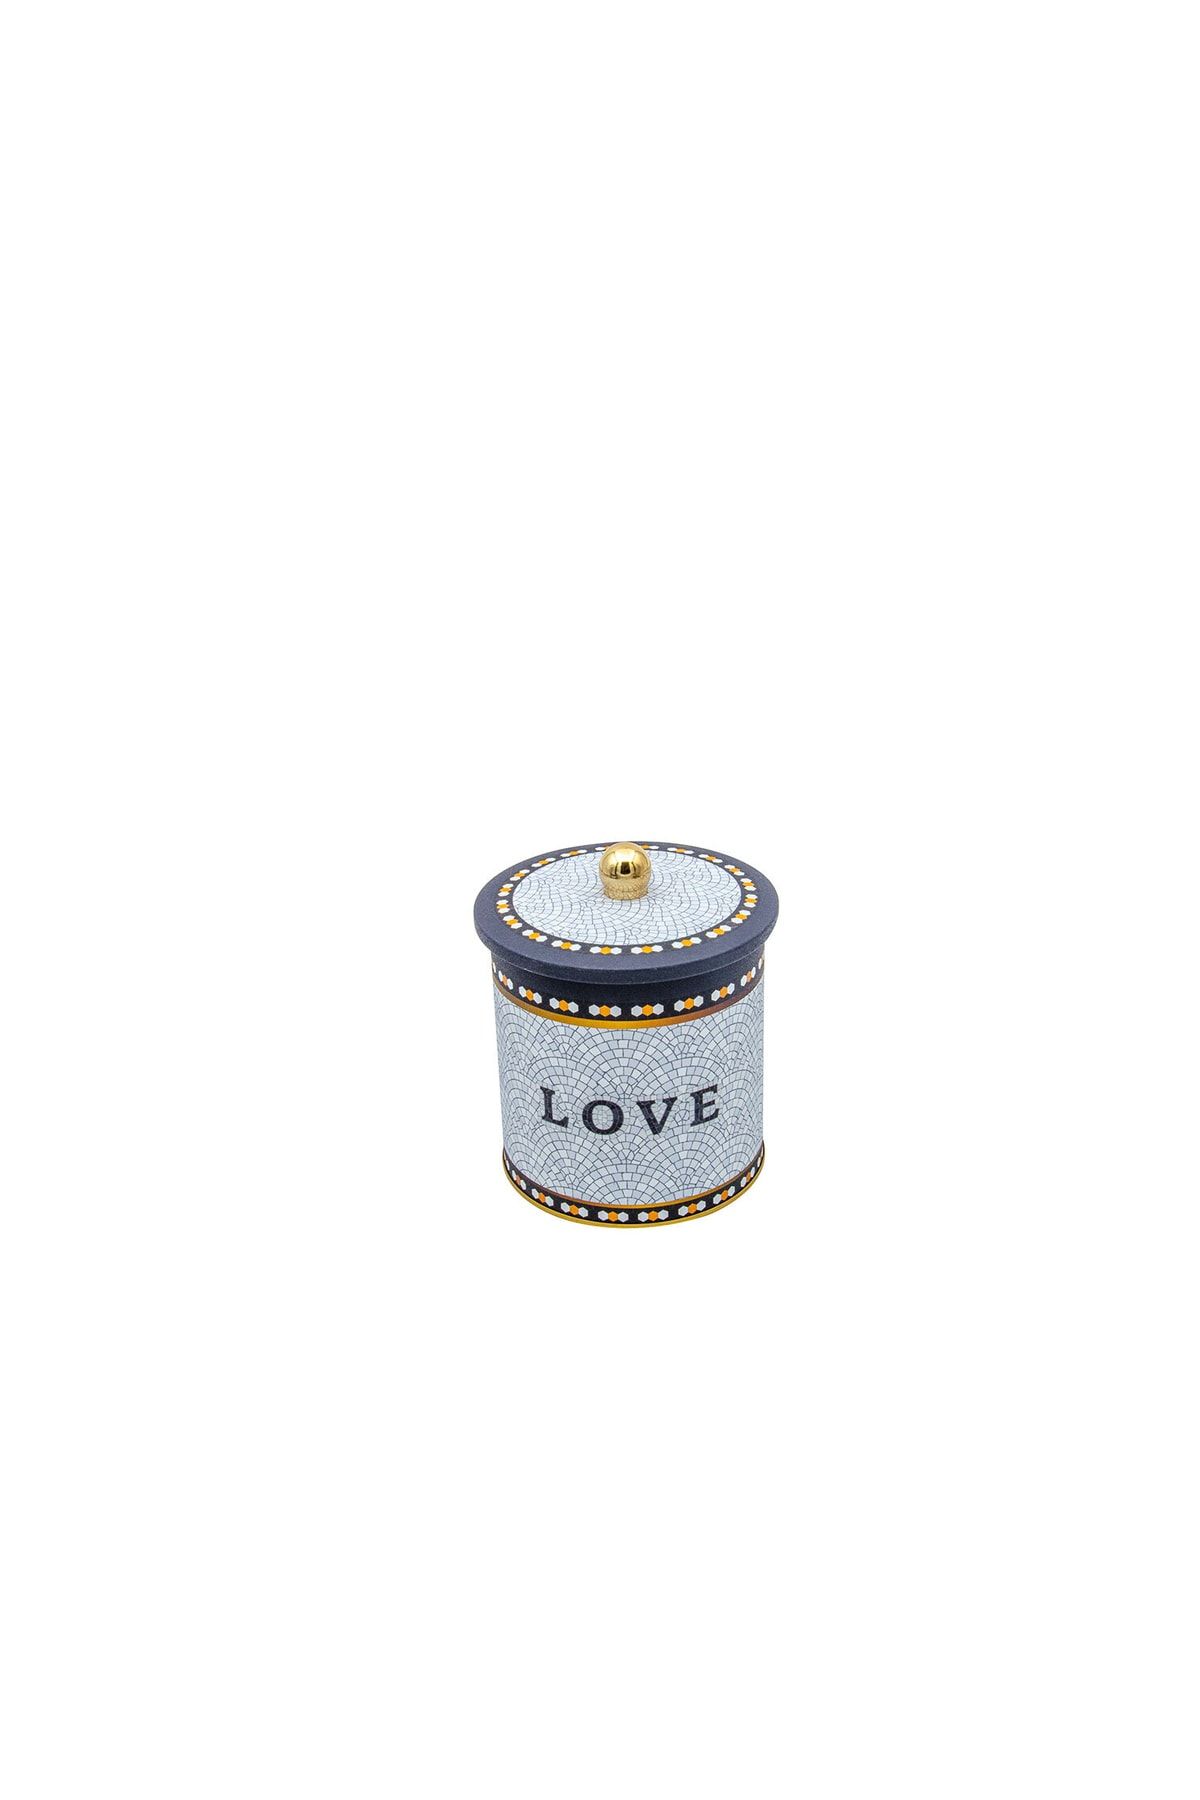 Mosaic Love Desenli Topuz Kulplu Yuvarlak Metal Kutu, 14 x 15 cm, 2.1 lt